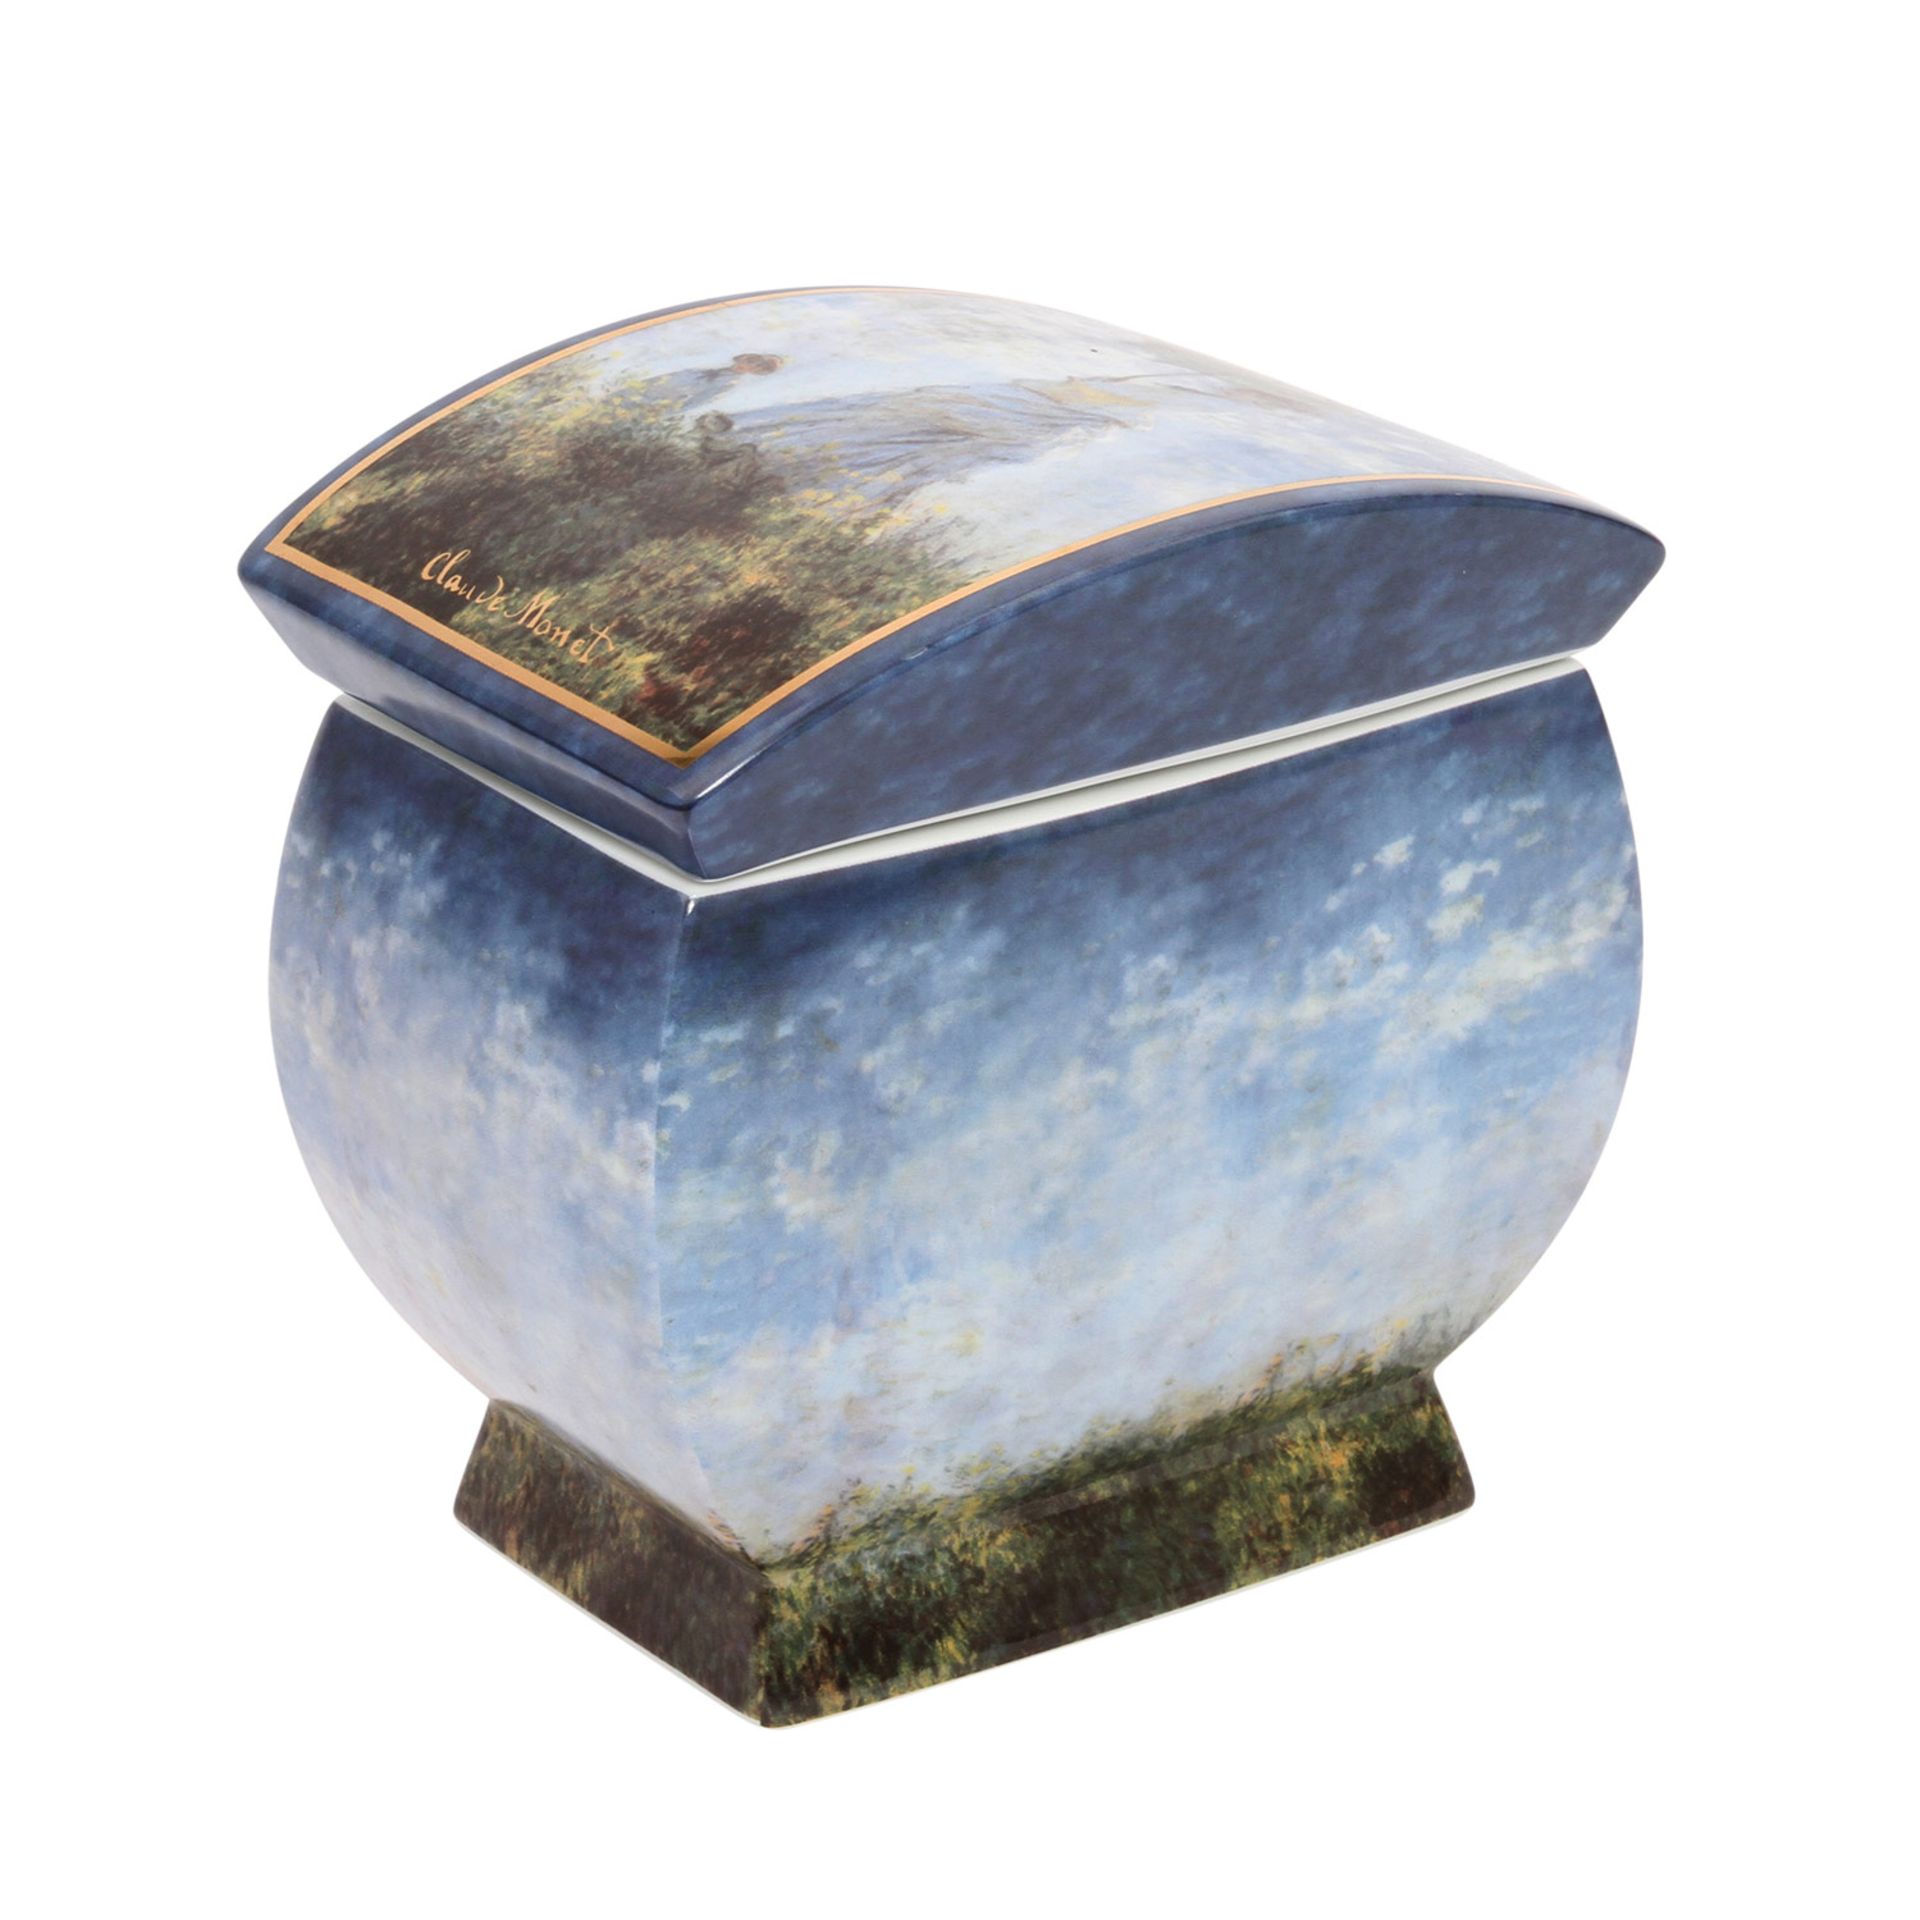 GOEBEL ARTIS ORBIS Deckeldose "Claude Monet", 20. Jh.Rechteckige Form mit flachem Deckel,